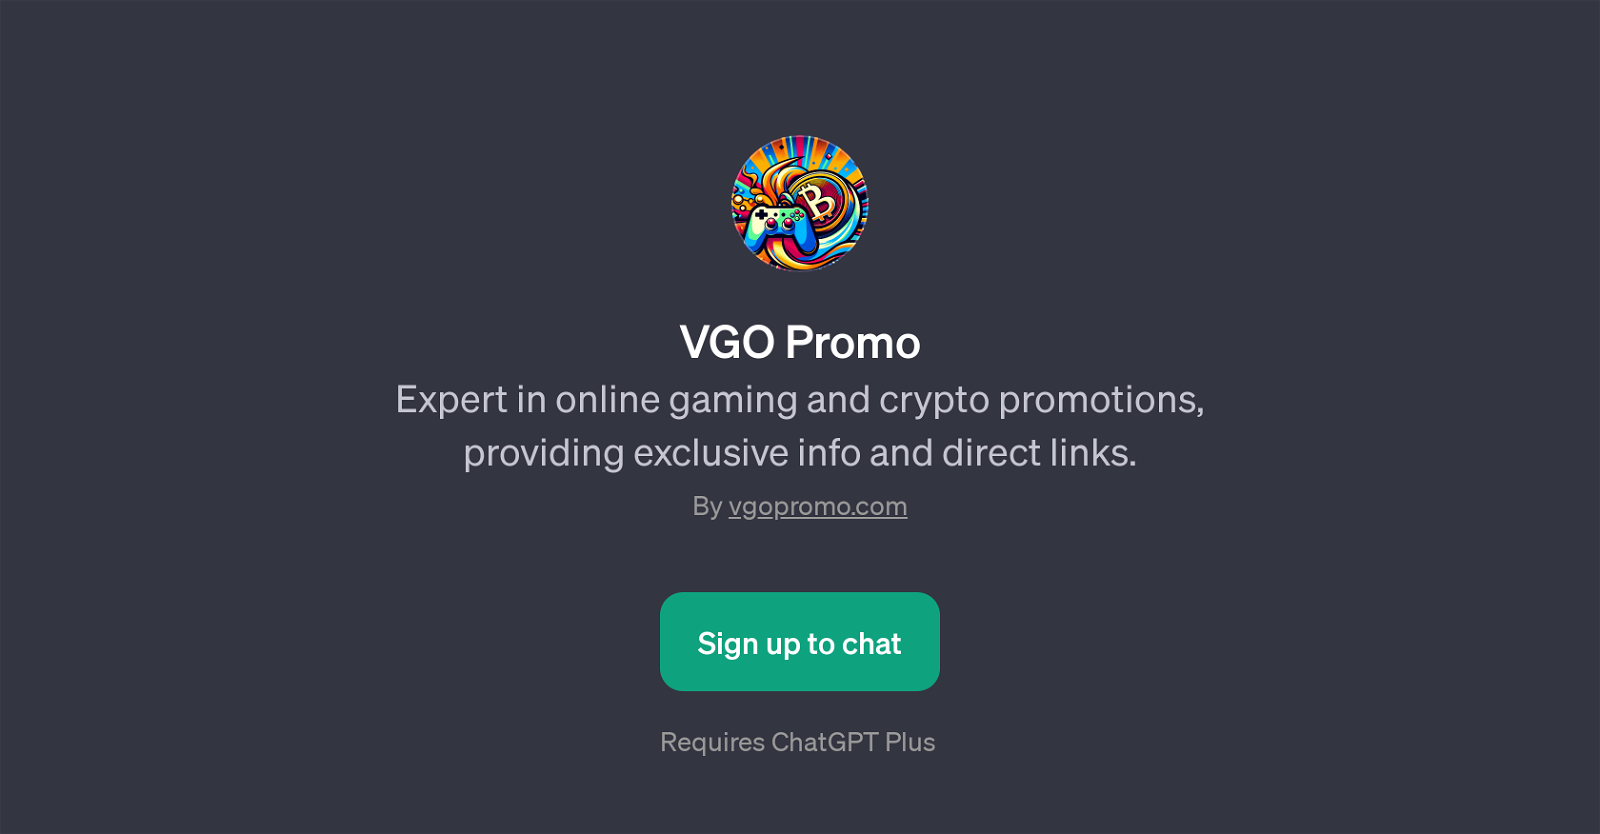 VGO Promo website